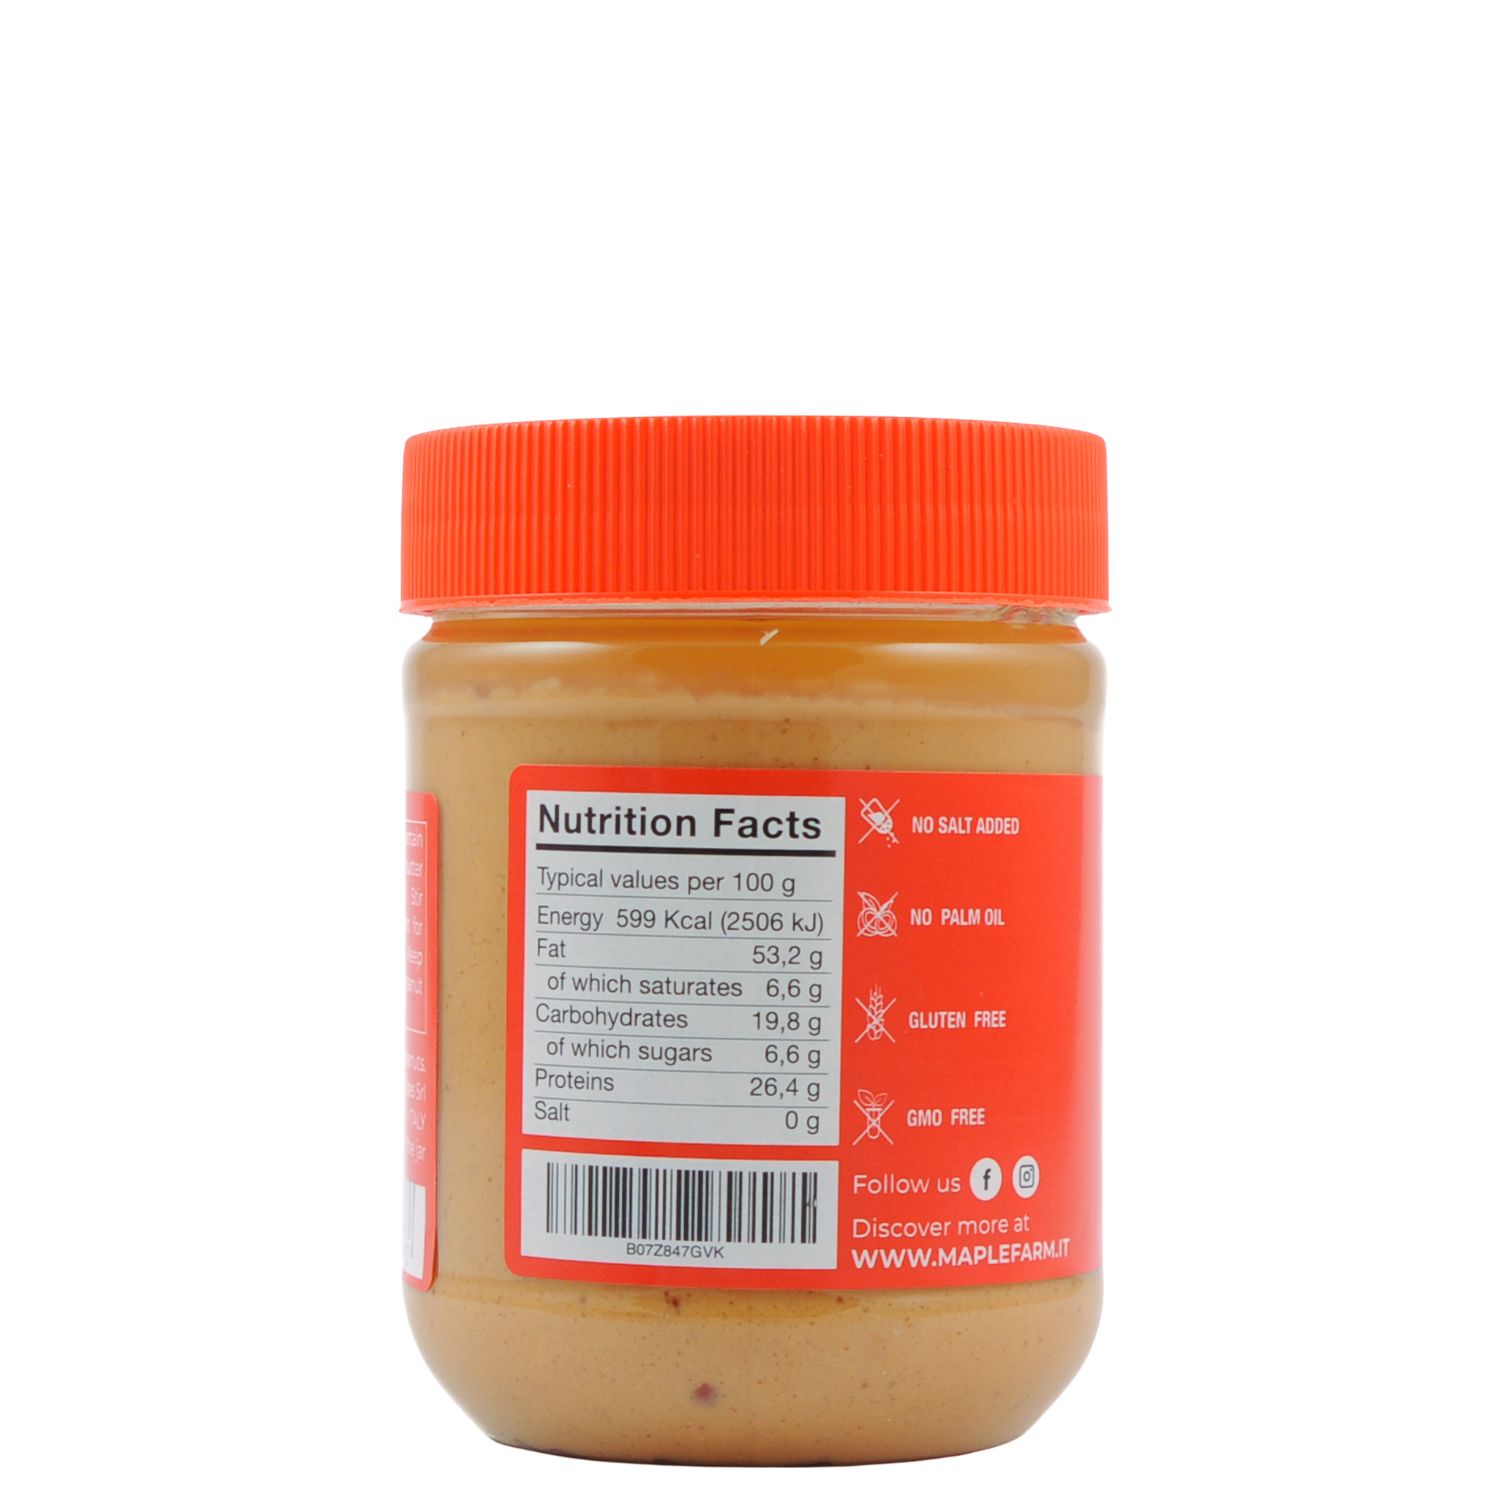 MapleFarm burro di arachidi croccante da 325g -valori nutrizionali